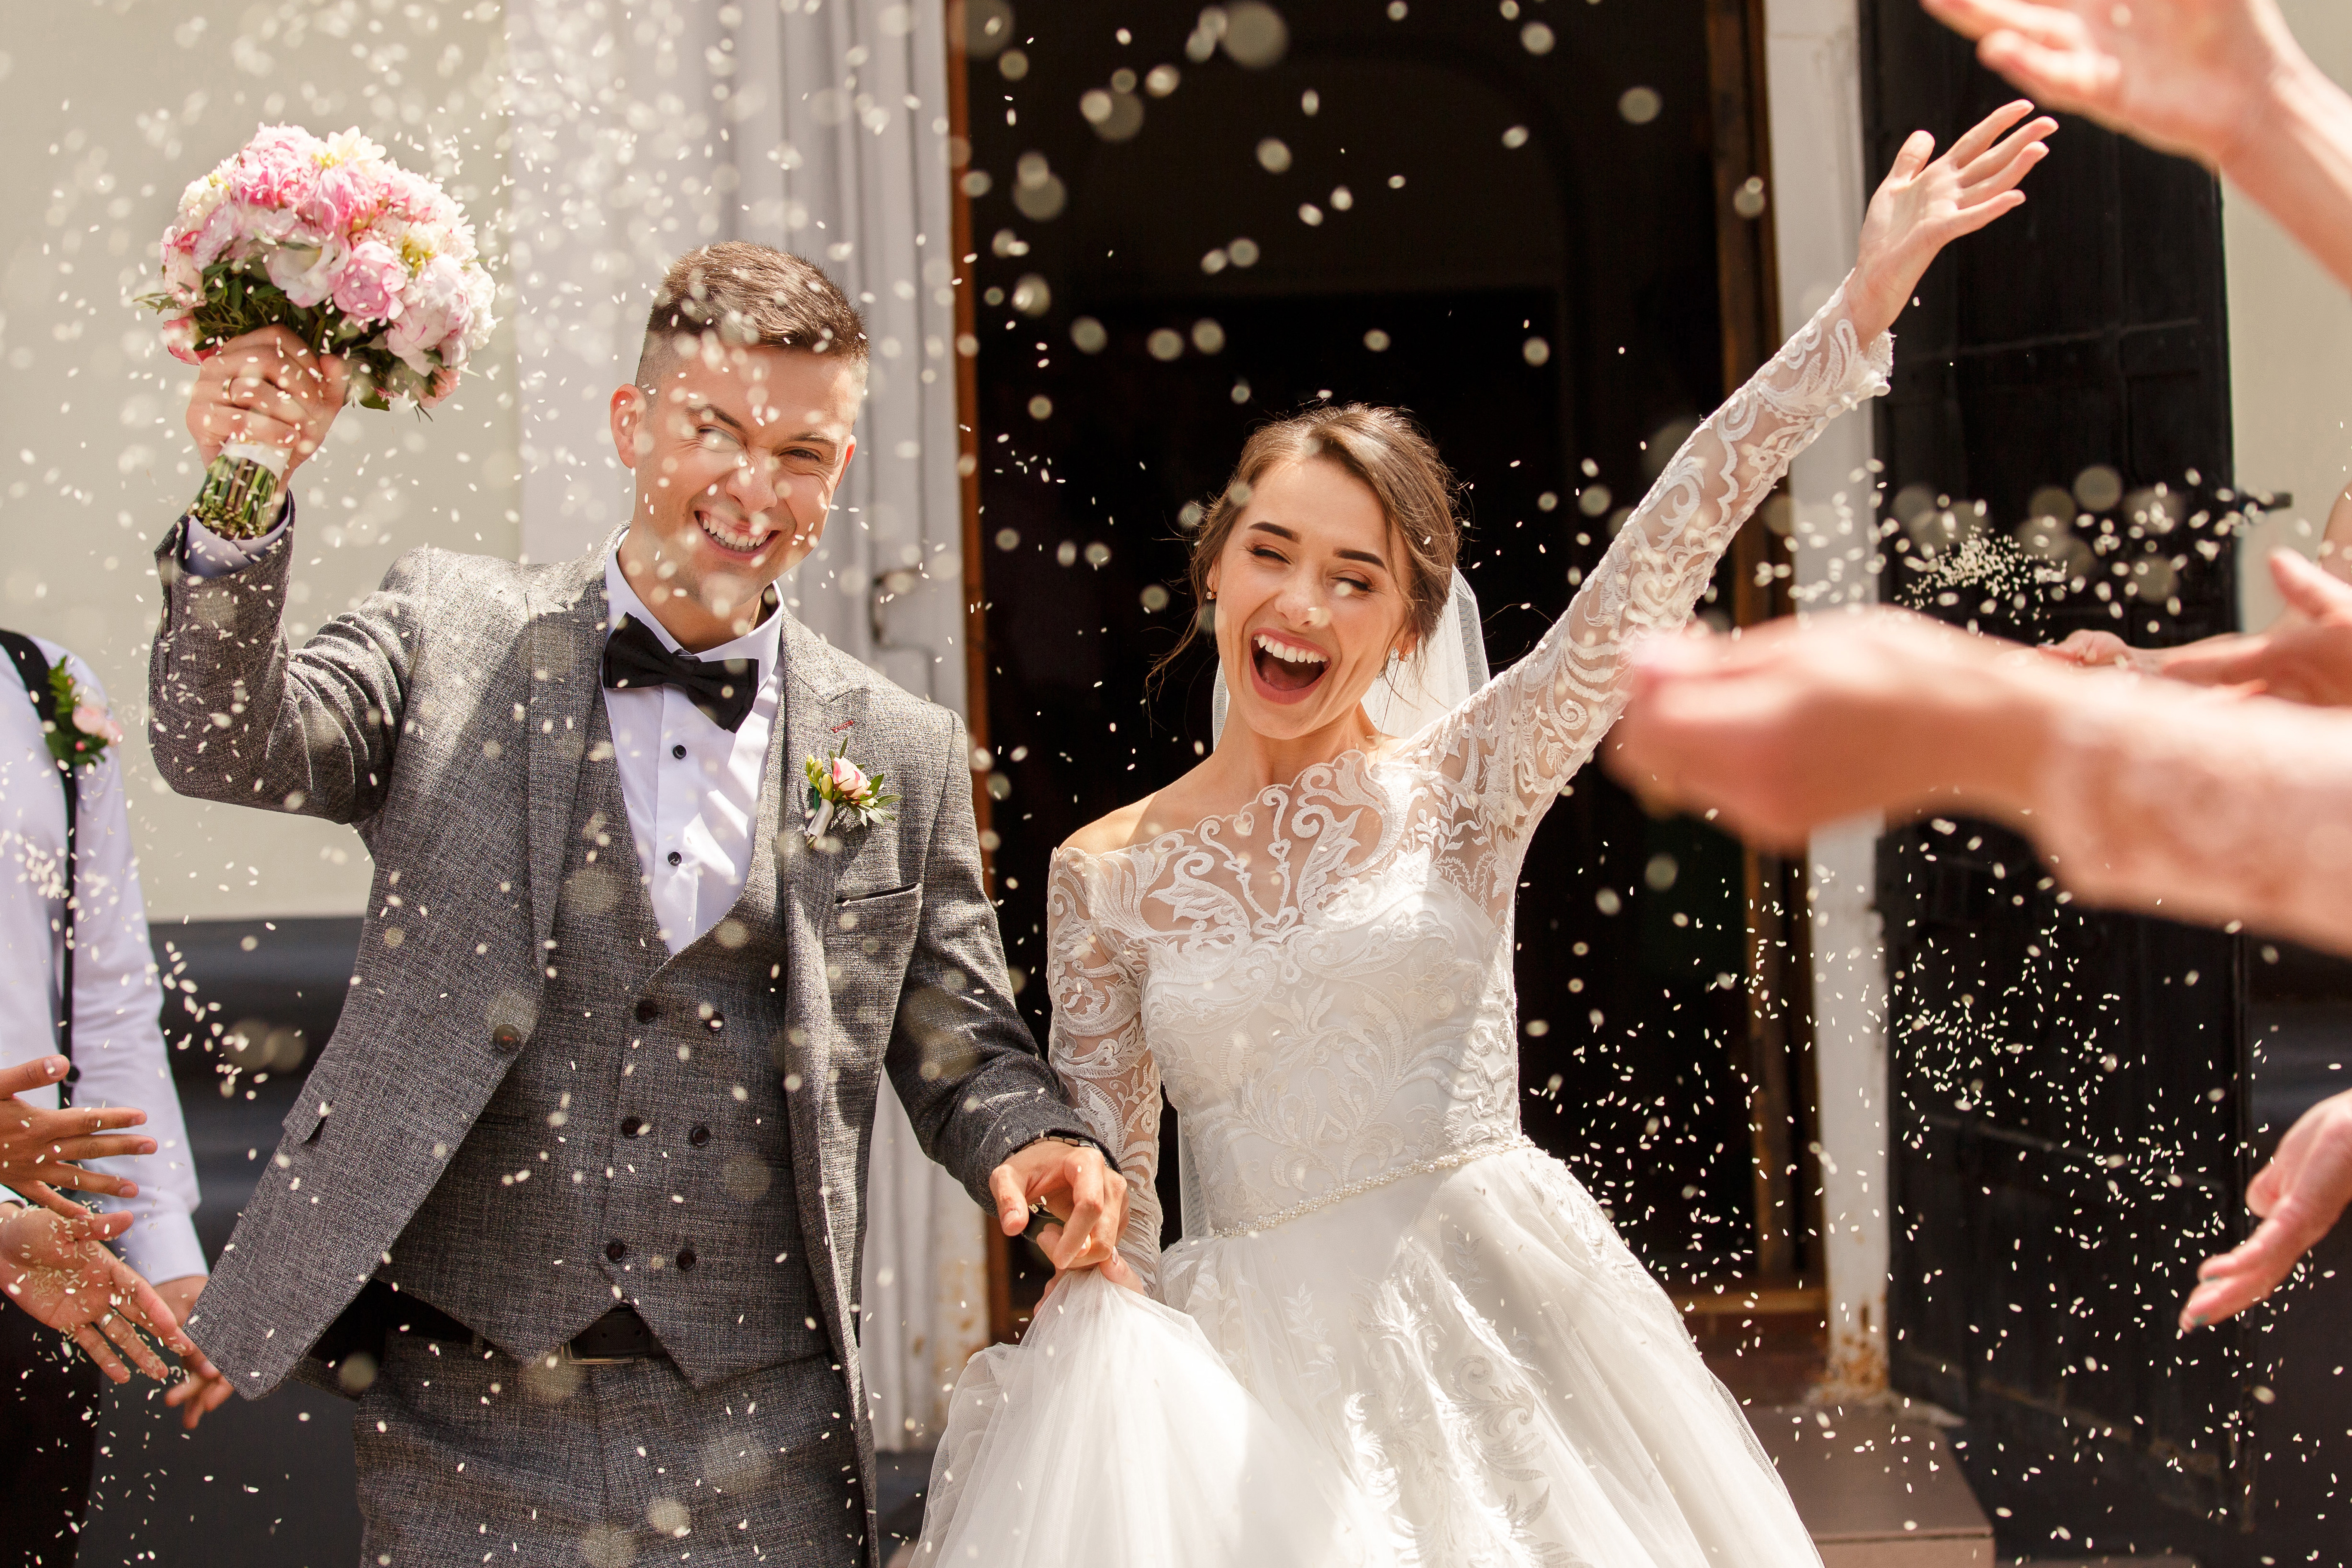 Un couple heureux lors de leur cérémonie de mariage | Source : Shutterstock